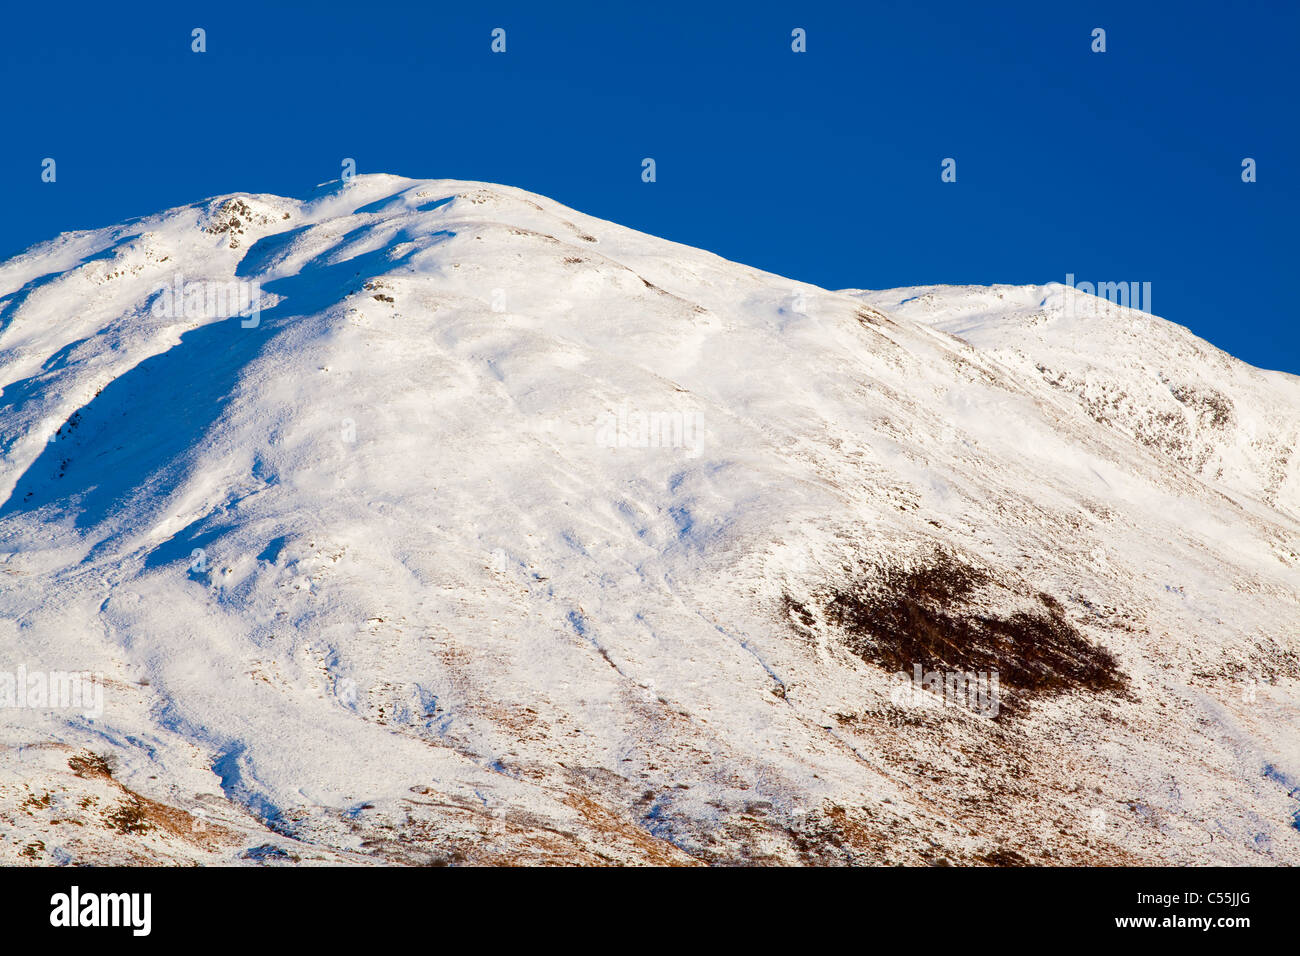 L'Écosse, les Highlands écossais, Glencoe. La montagne couverte de neige près de Glencoe. Banque D'Images